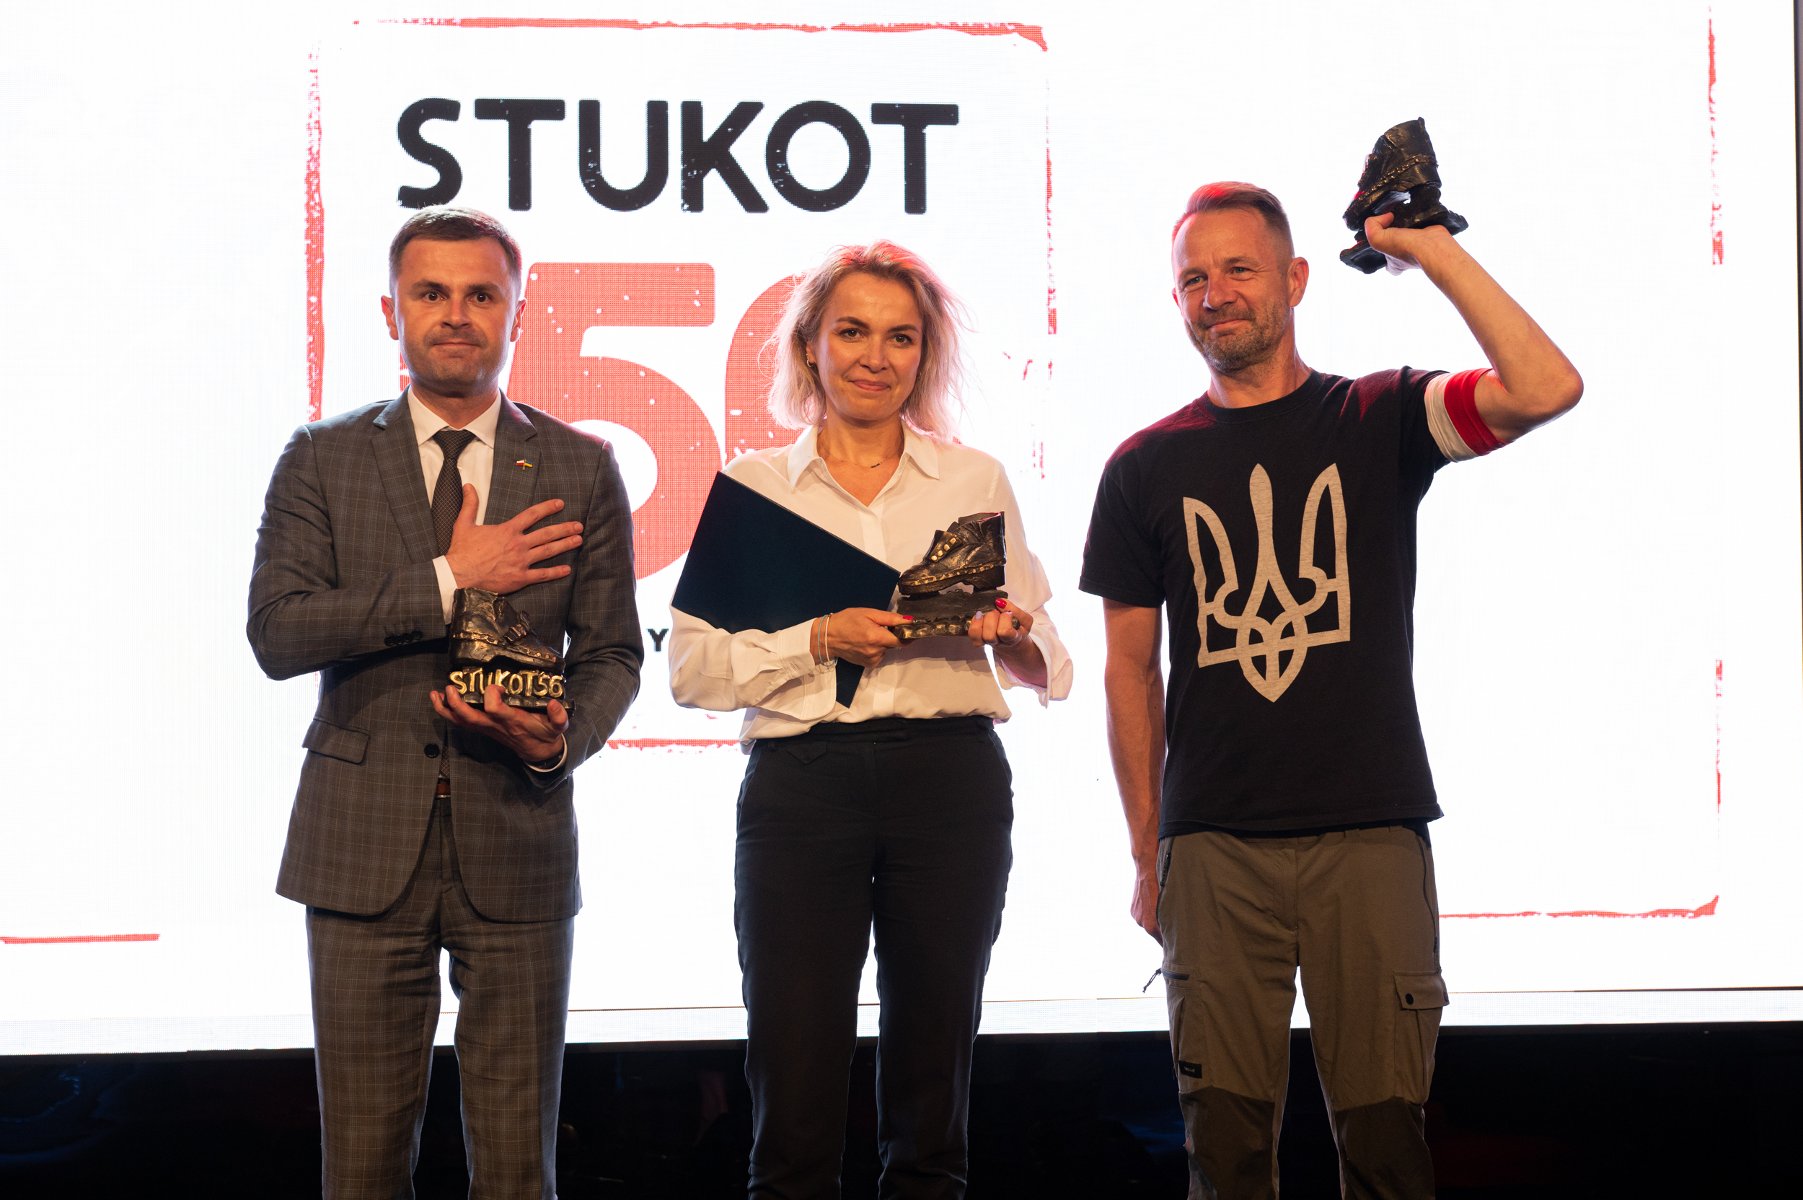 Na zdjęciu laureaci nagrody: dwaj mężczyźni i kobieta, wszyscy trzymają w rękach statuetki, w tle ekran z napisem Stukot '56 - grafika artykułu